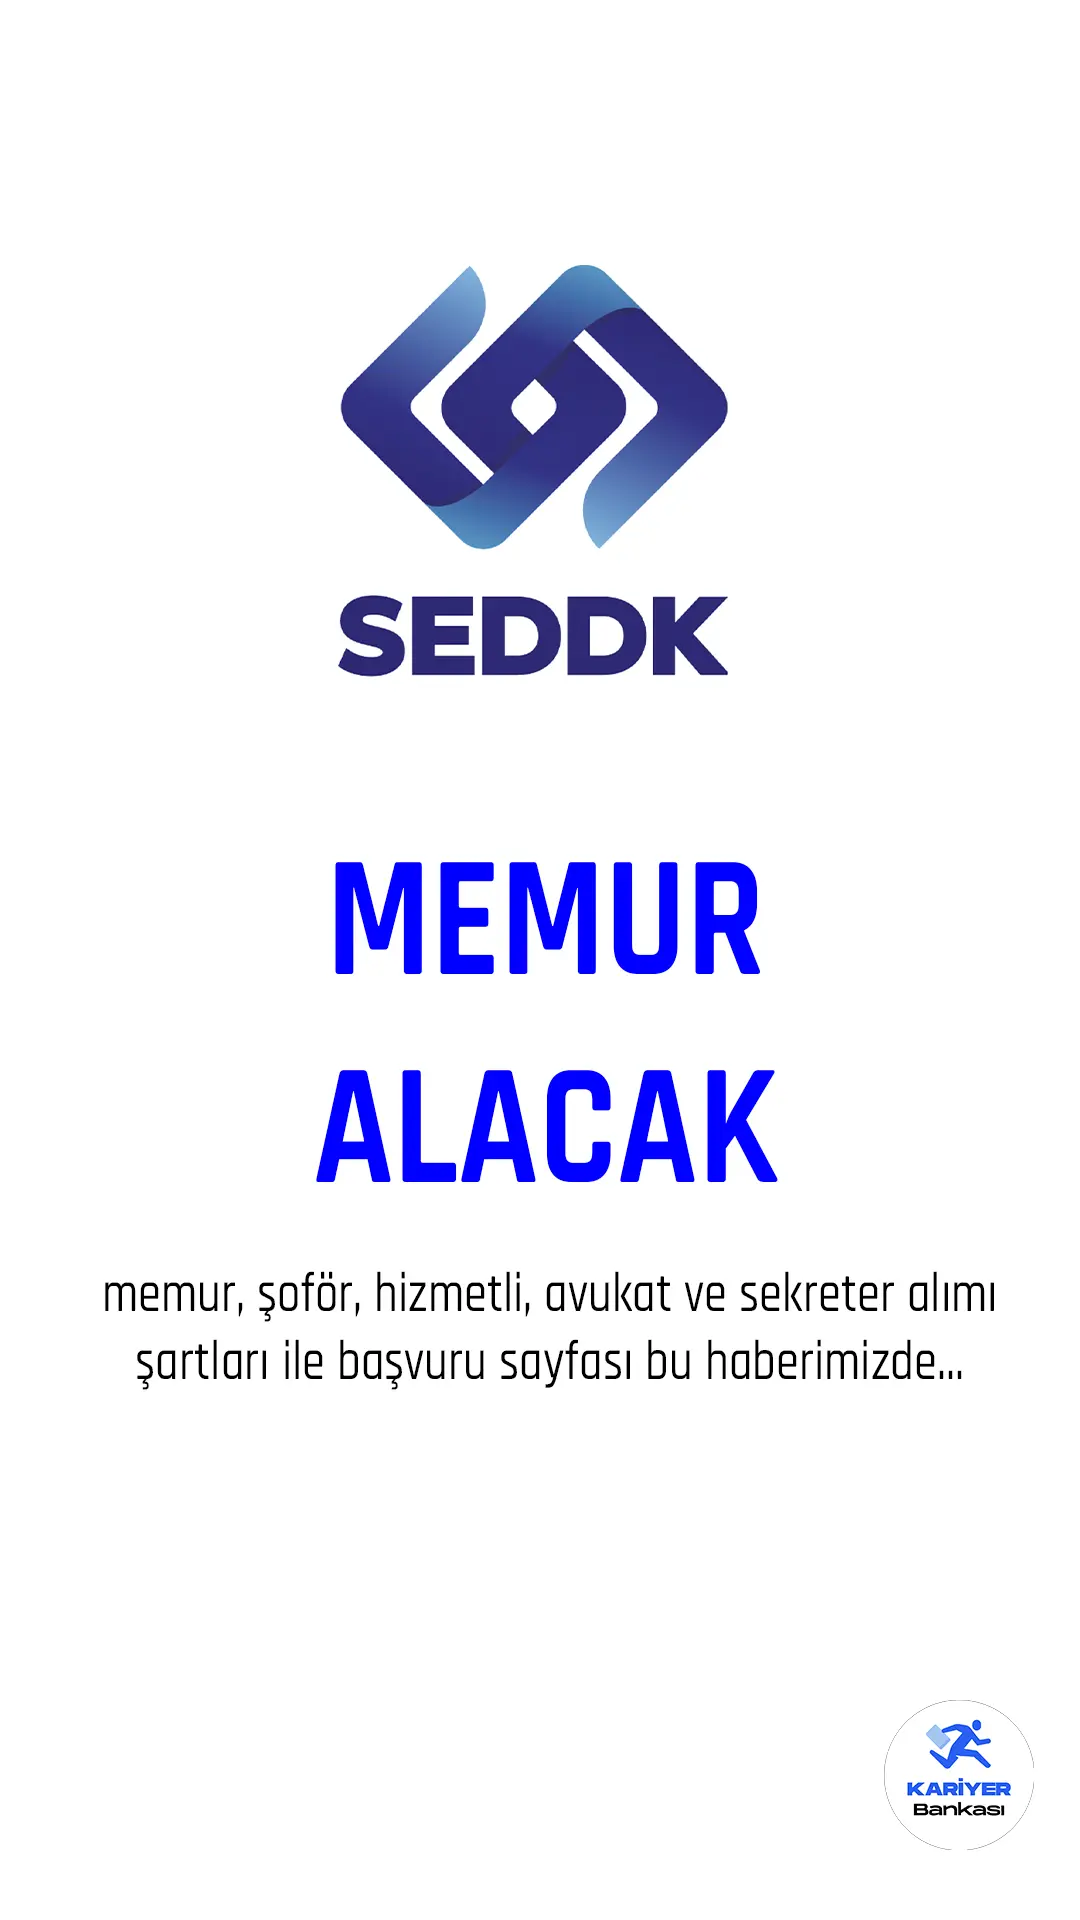 SEDDK memur alımı için başvurular alınıyor.